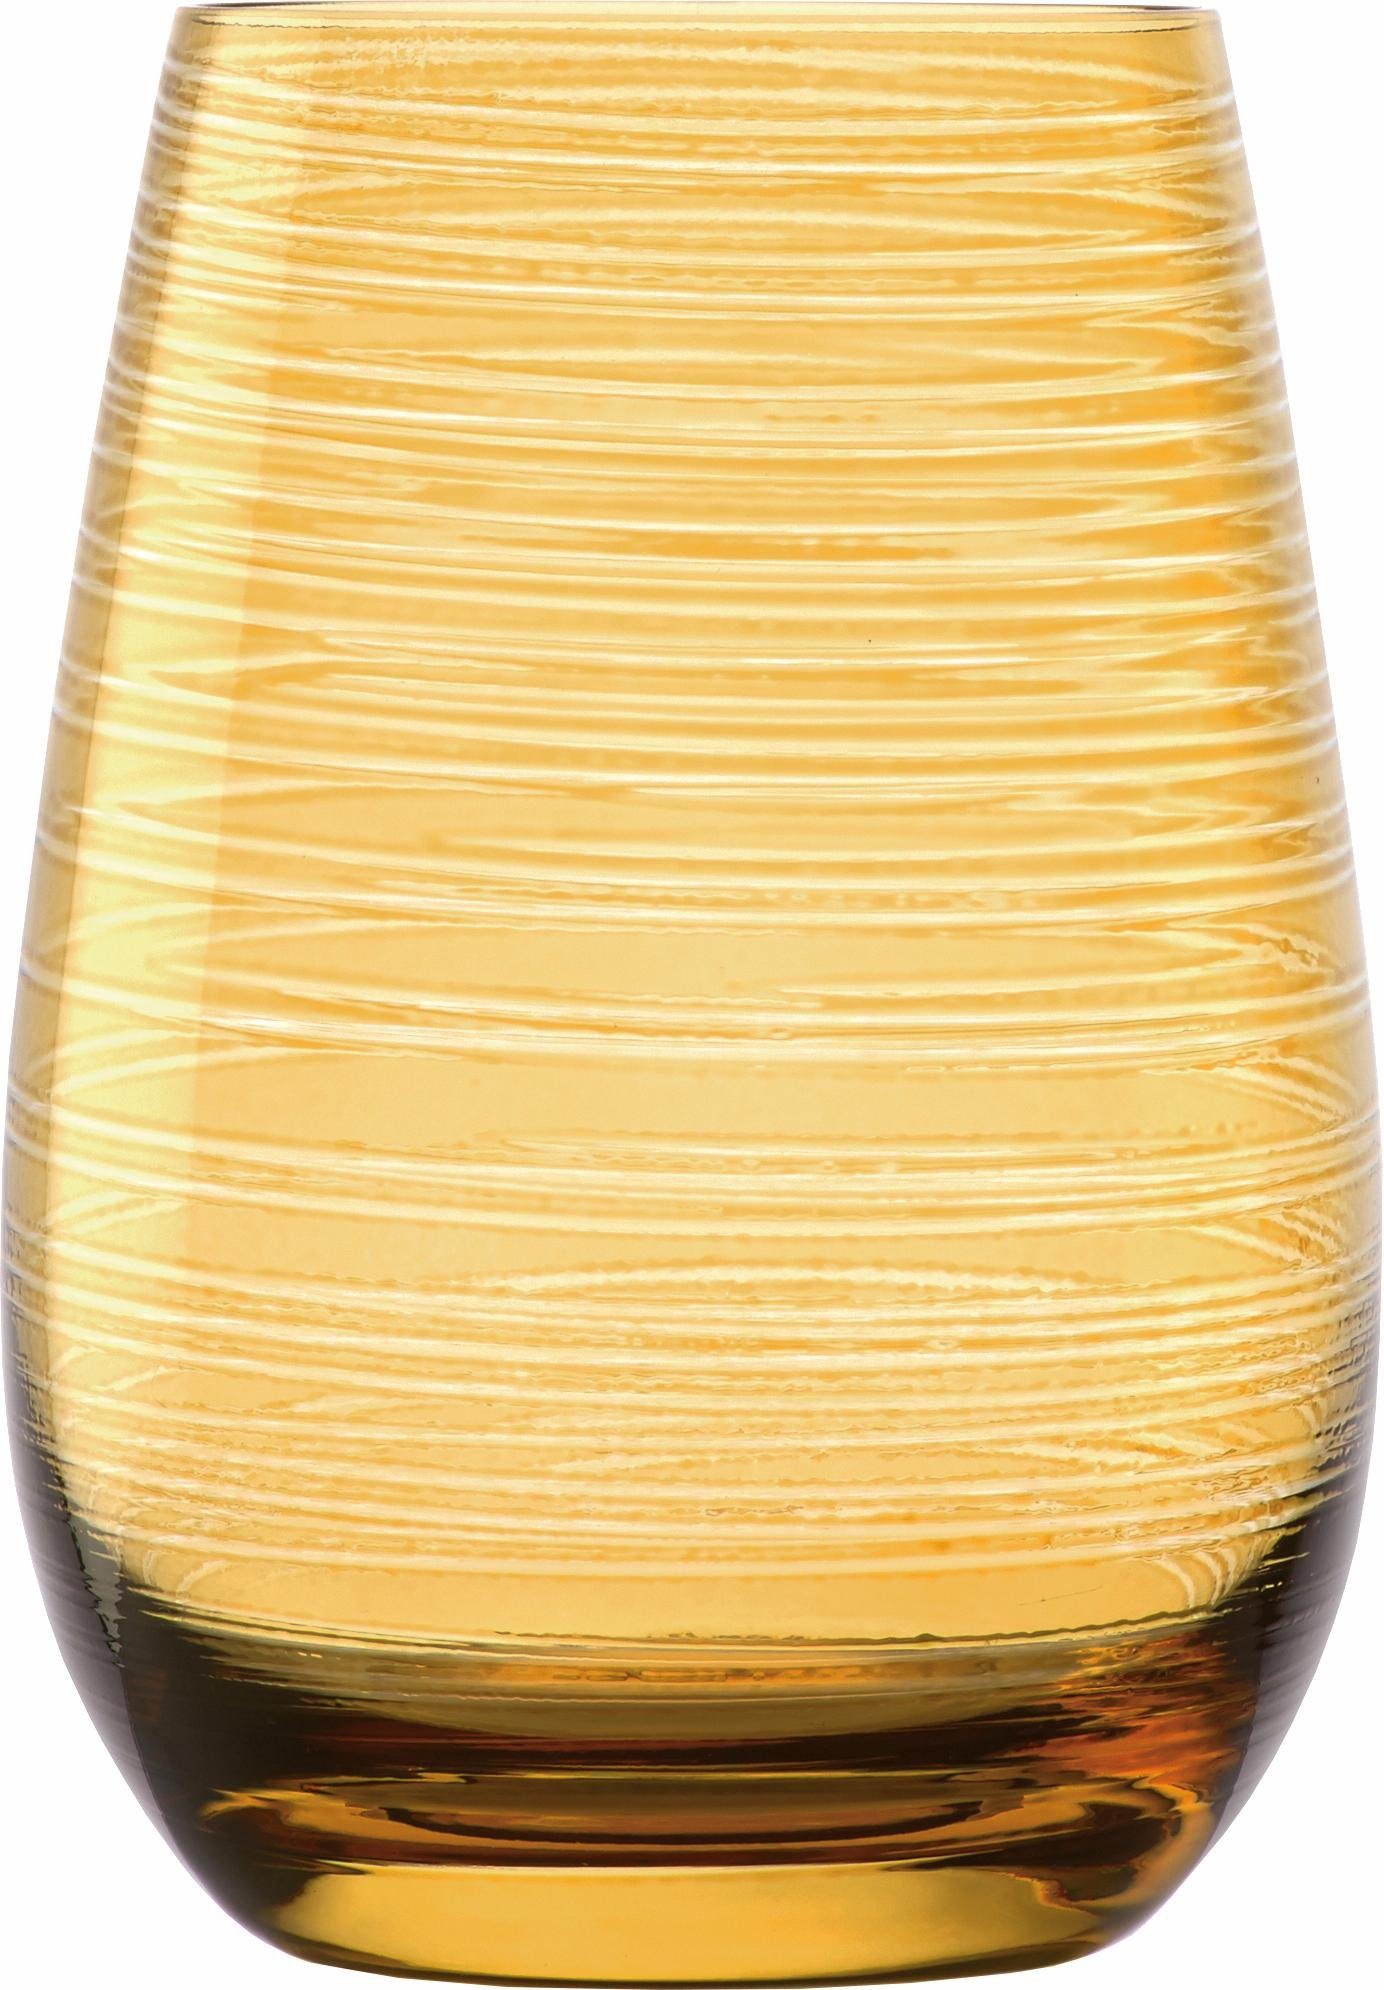 Stölzle Becher TWISTER, Glas, 6-teilig bernsteinfarben